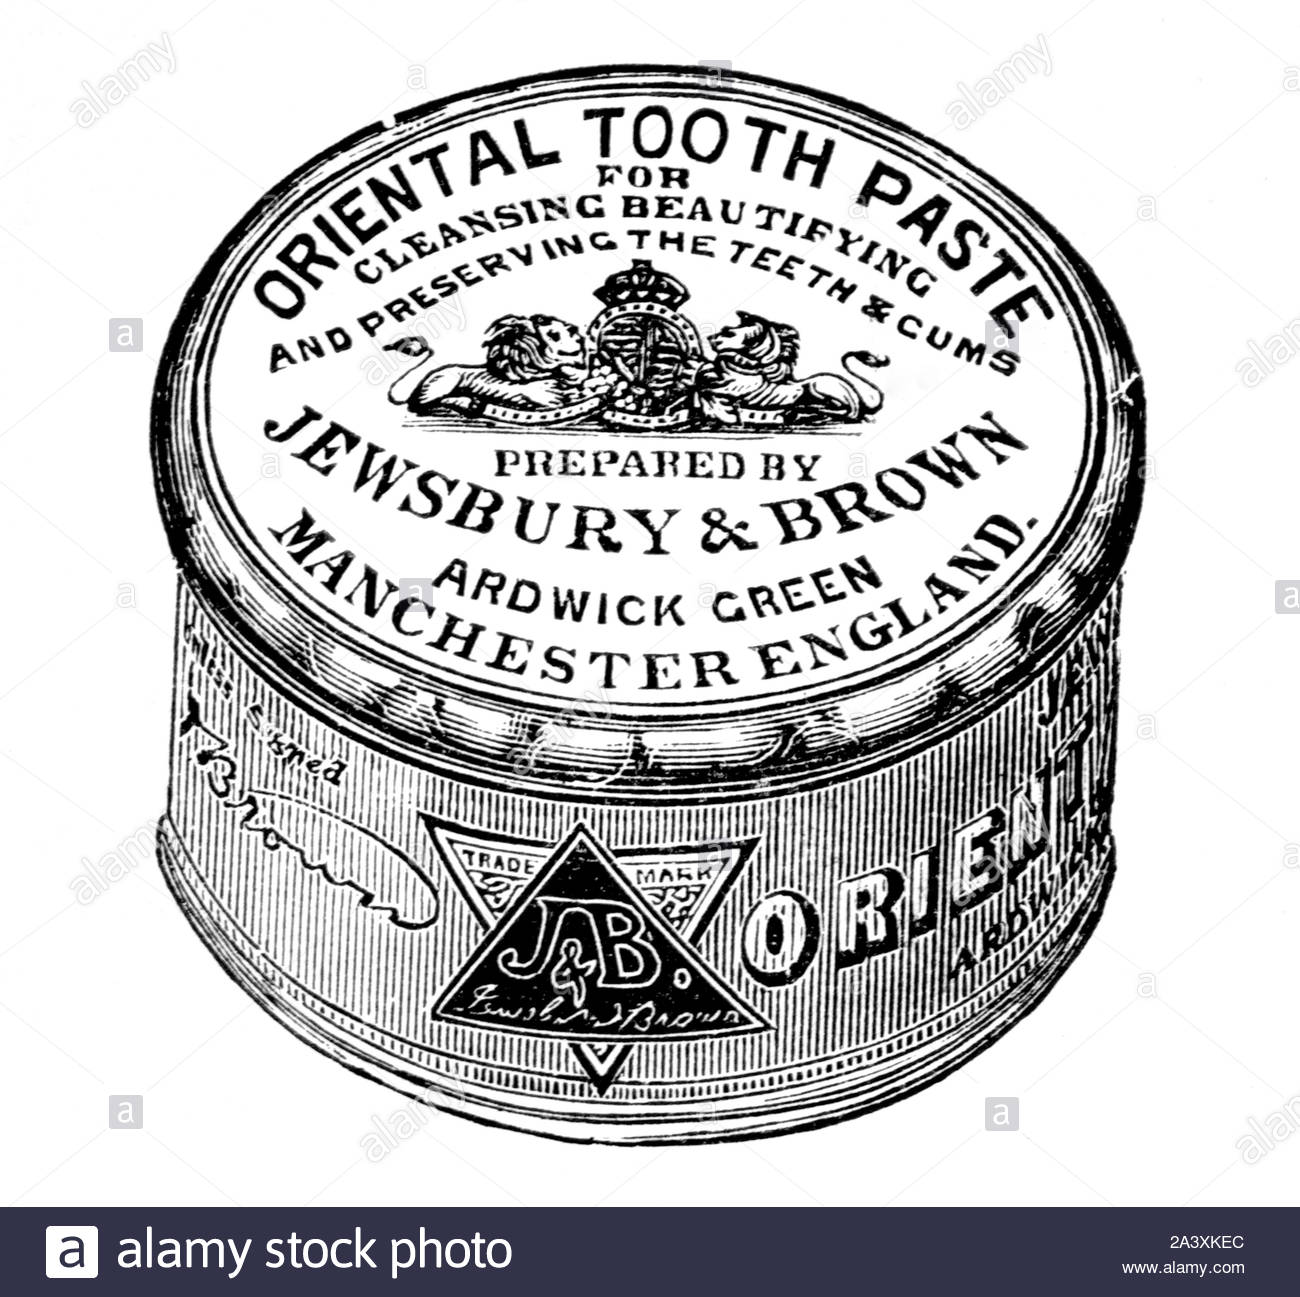 Era Vittoriana, orientale il dentifricio, vintage pubblicità dal 1897 Foto Stock